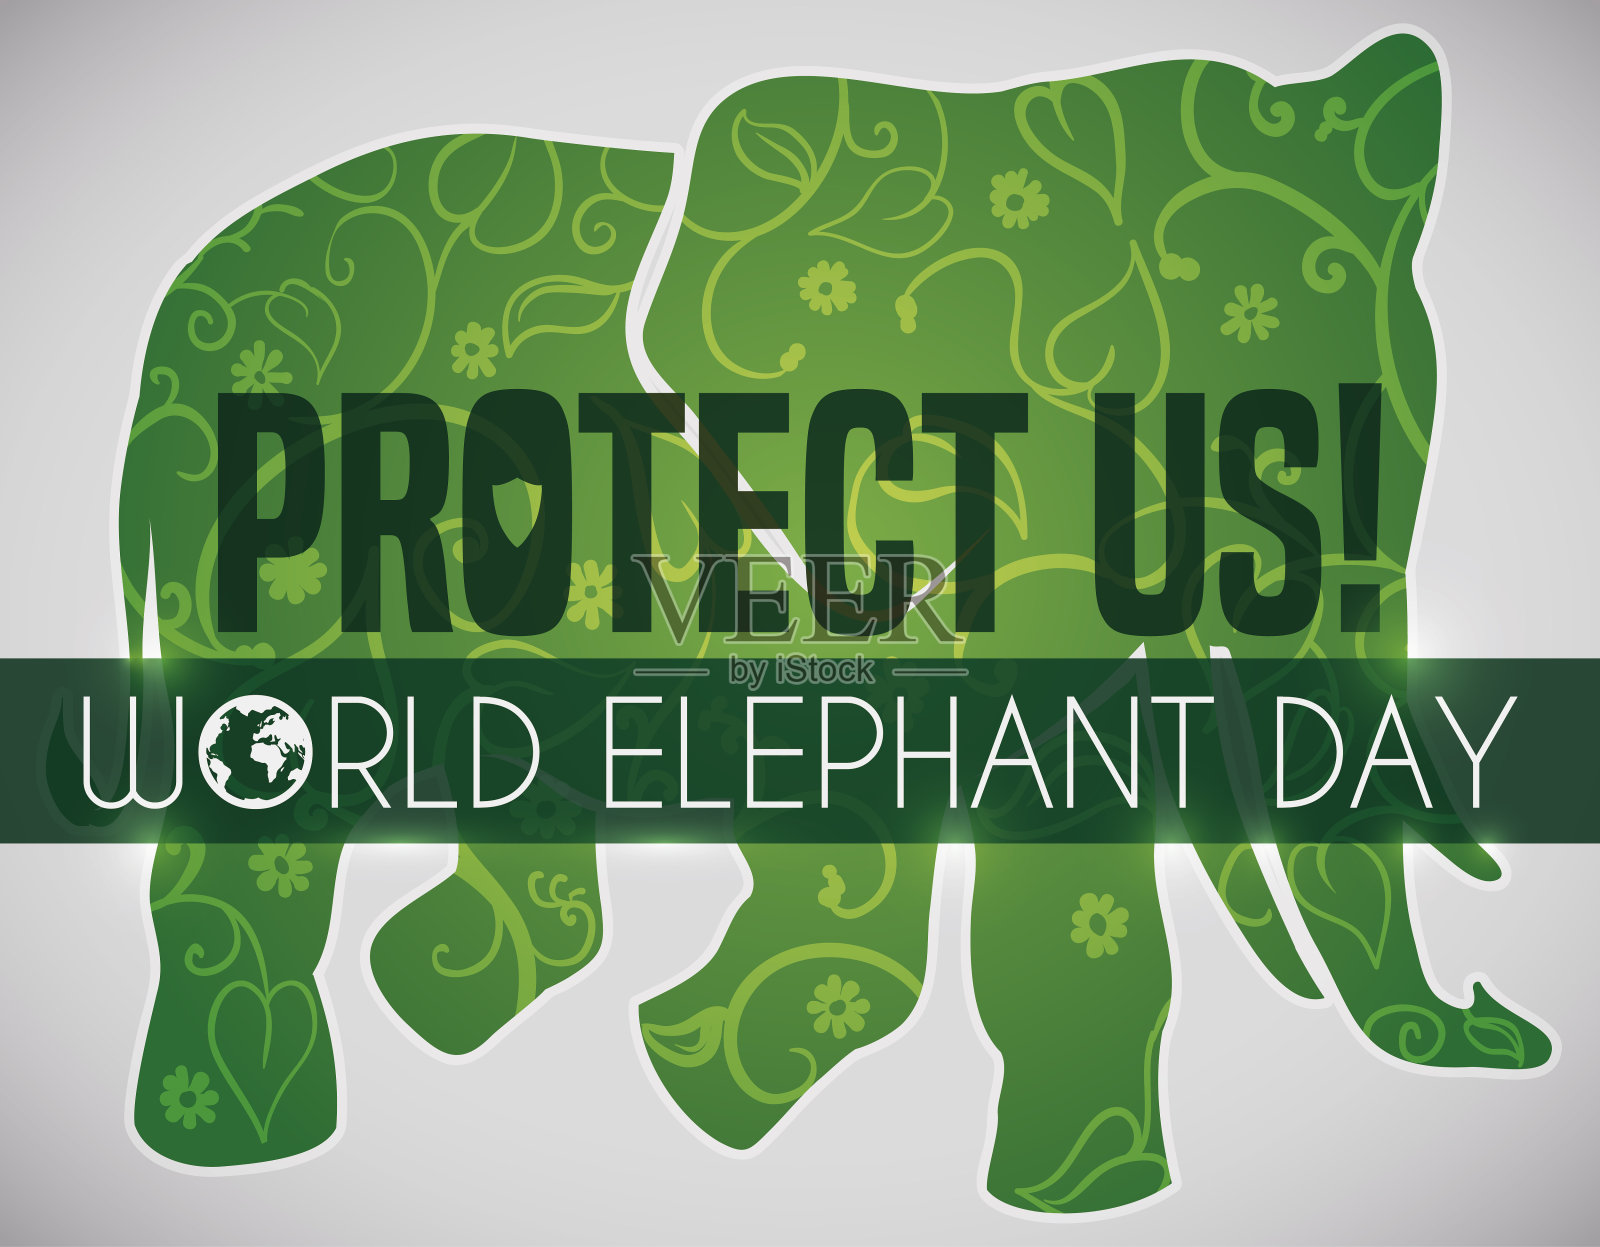 象征性的绿色大象剪影促进世界大象日插画图片素材